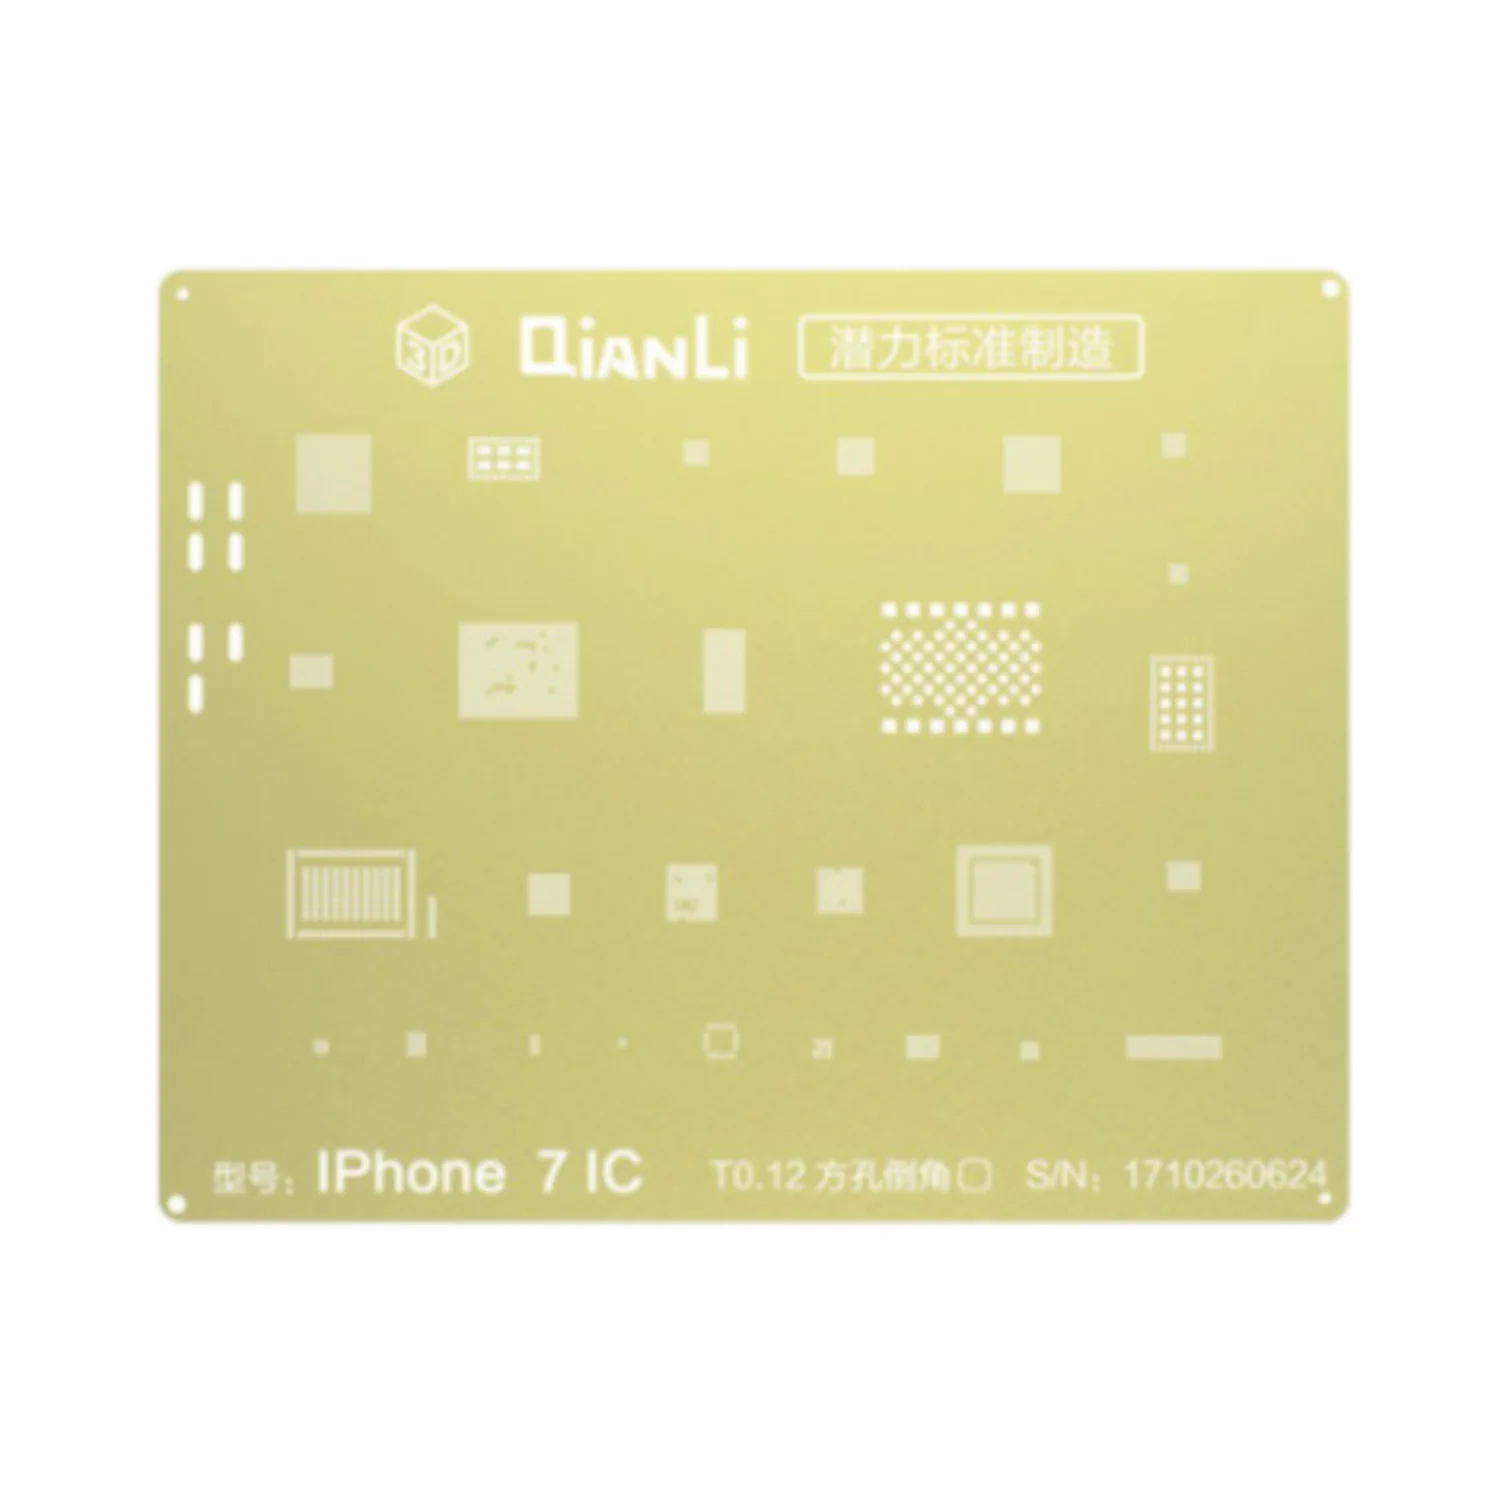 Pochoir Rebillage 3D QianLi pour Apple iPhone 7 / iPhone 7 Plus CMS Or